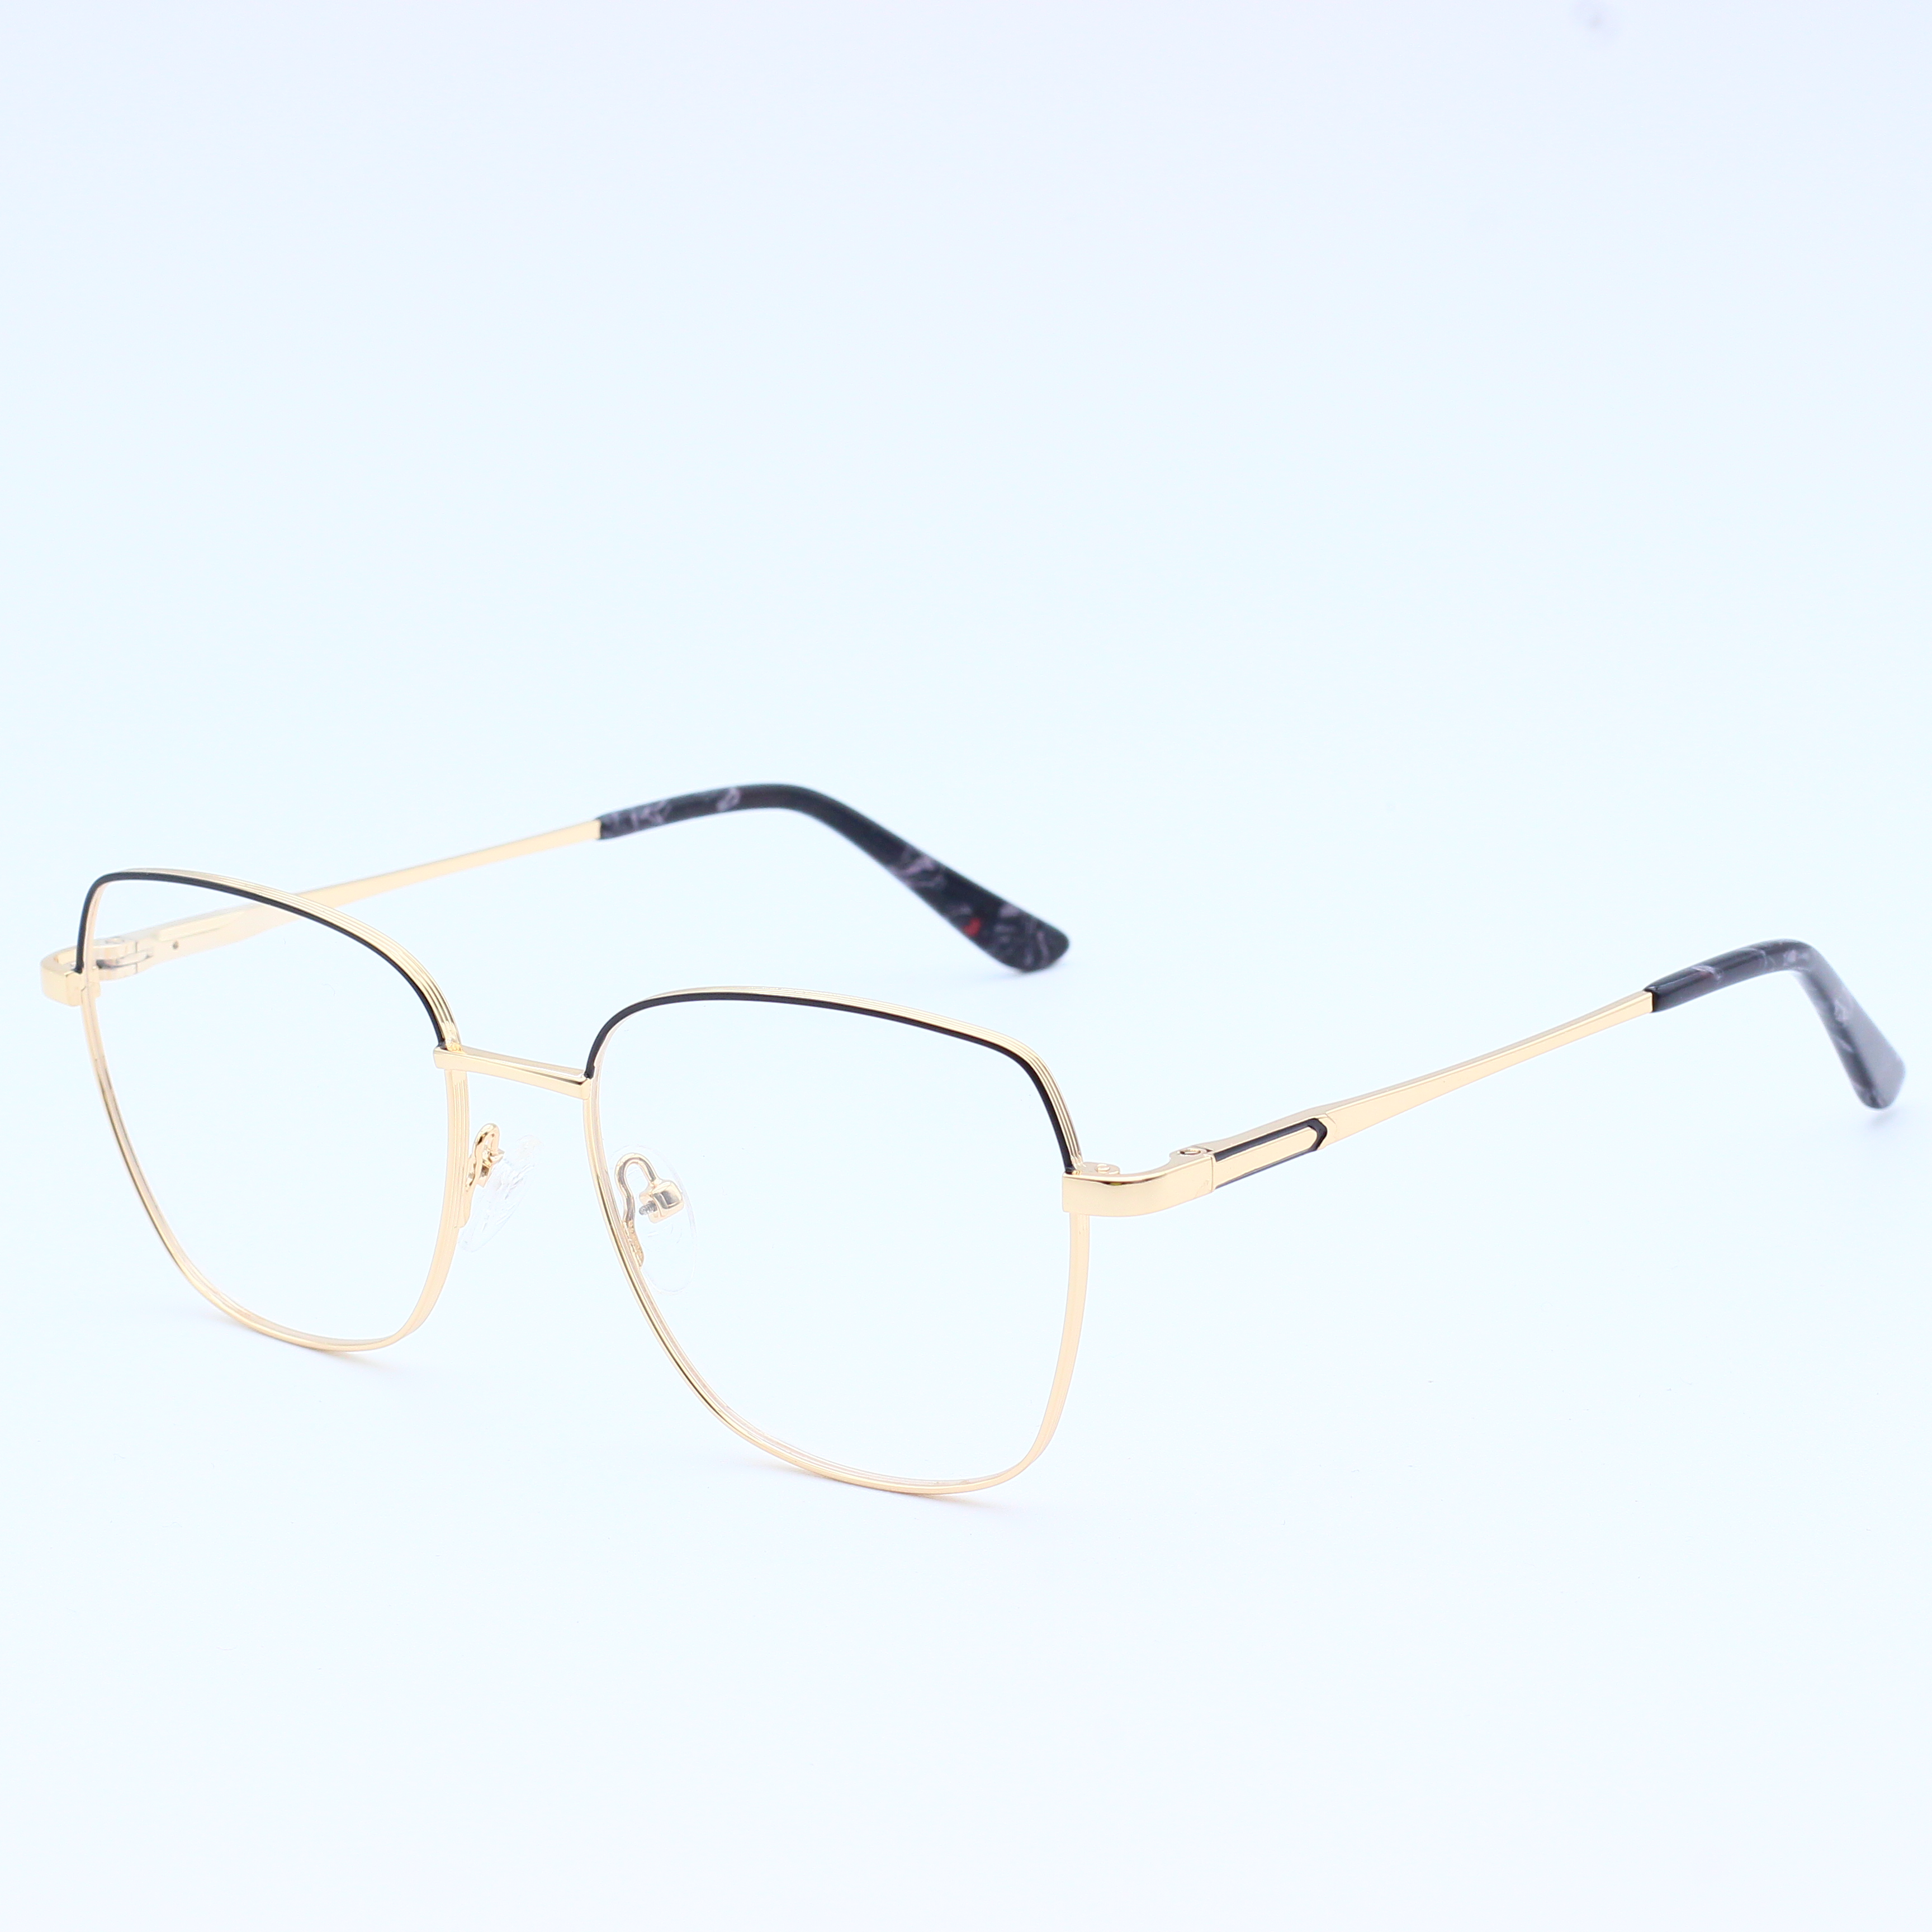 Best selling combine metal eyeglasses frames (5)